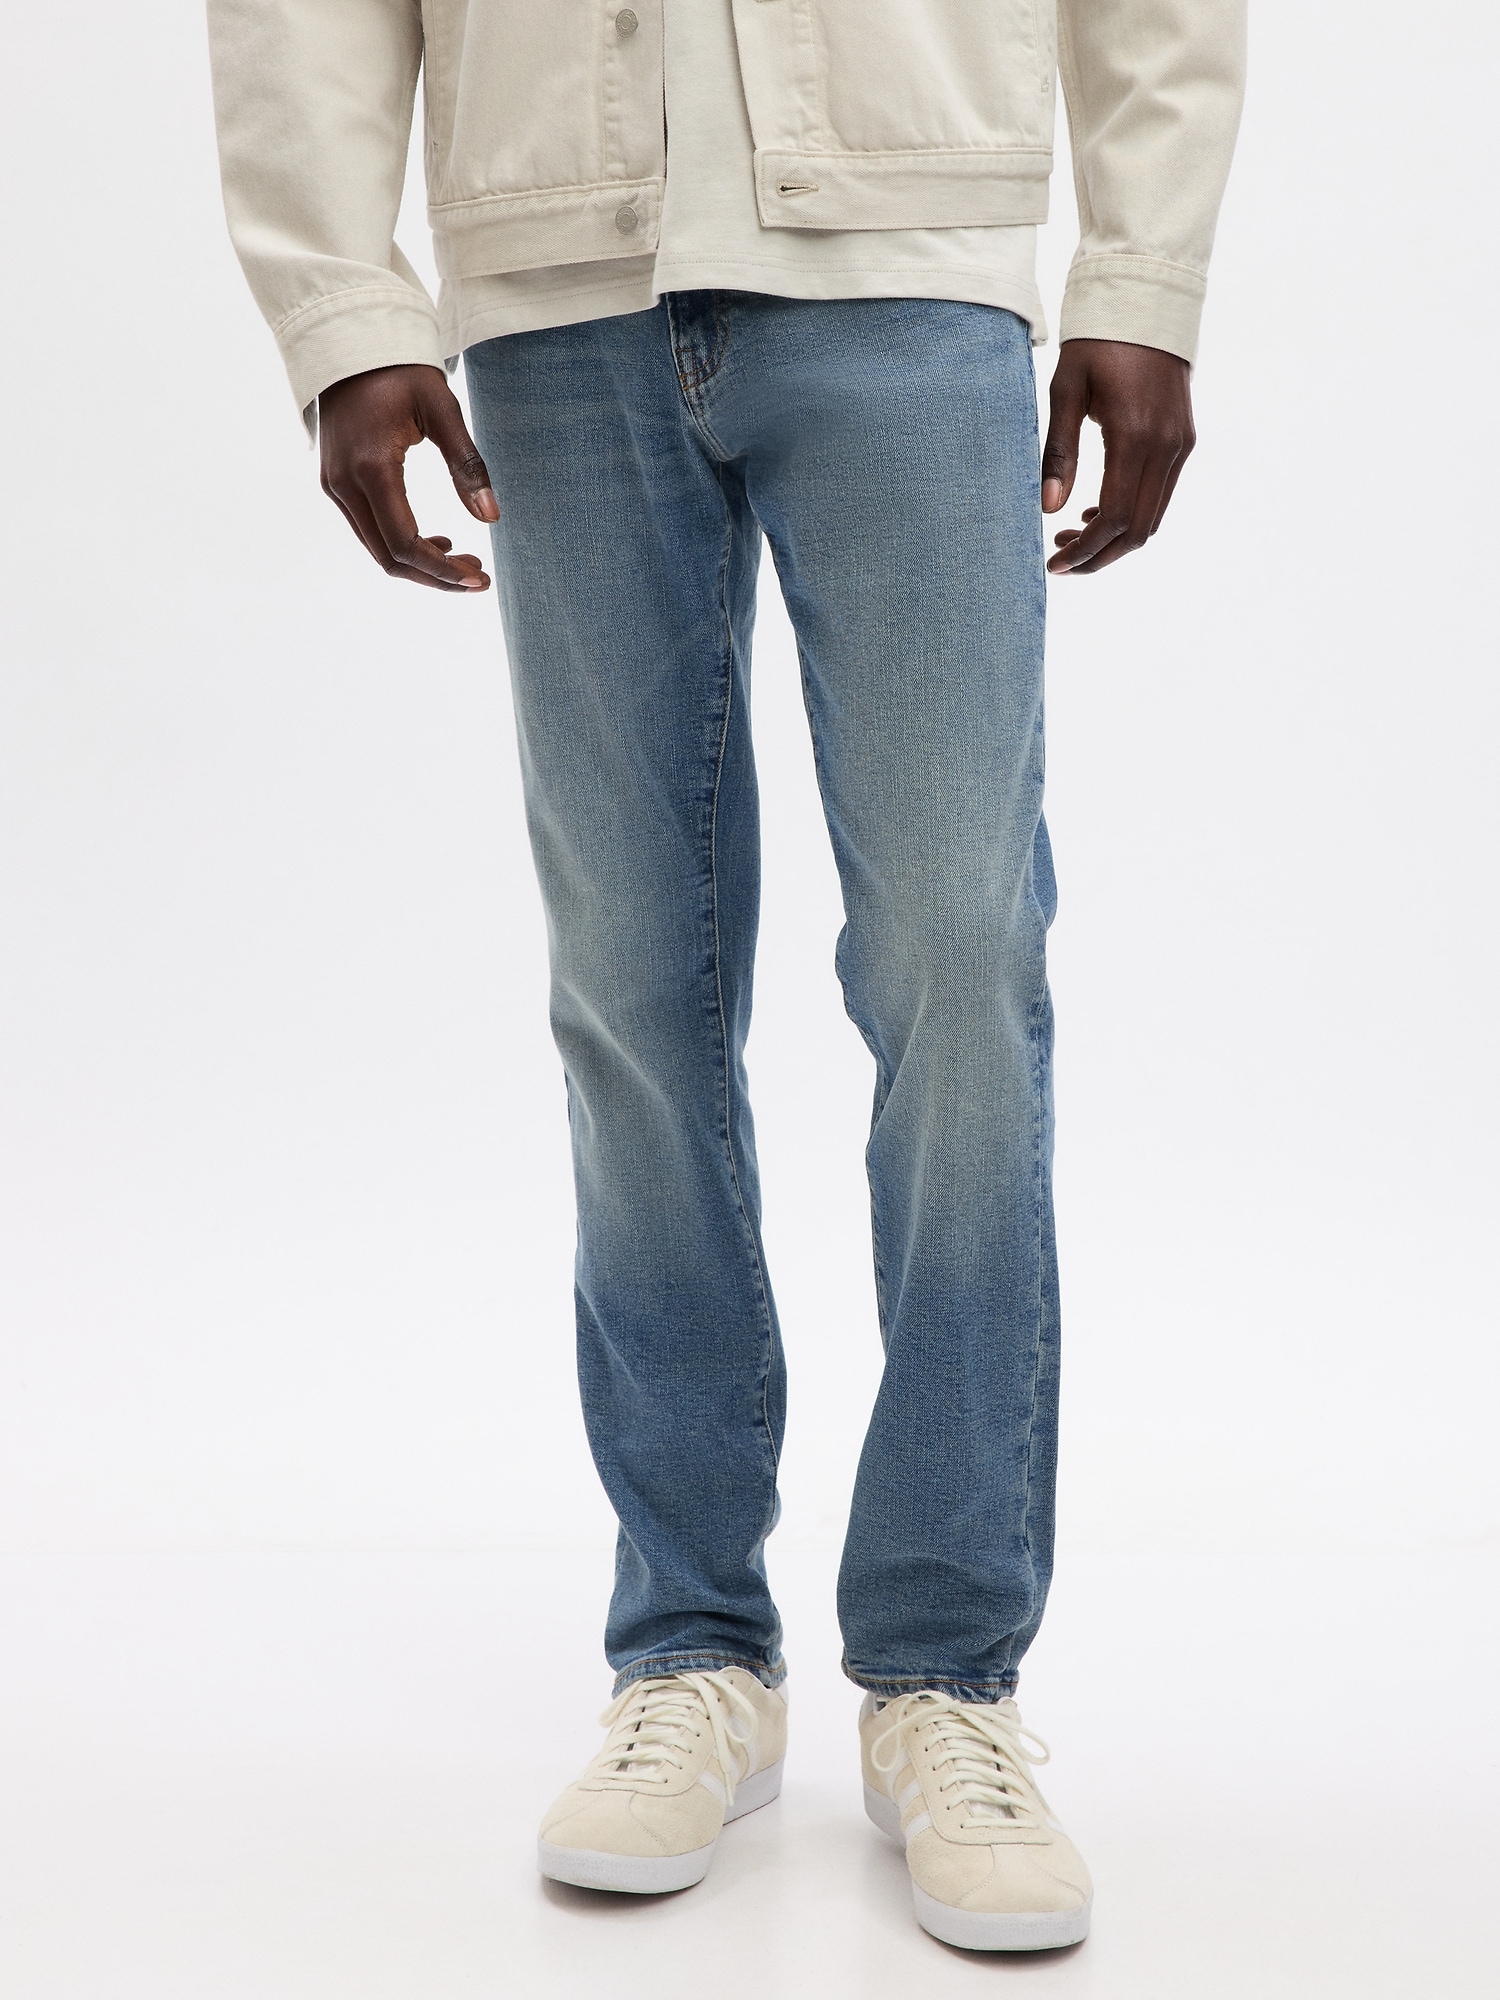 Gap Gap Soft Wear Skinny Jeans with GapFlex 79.95